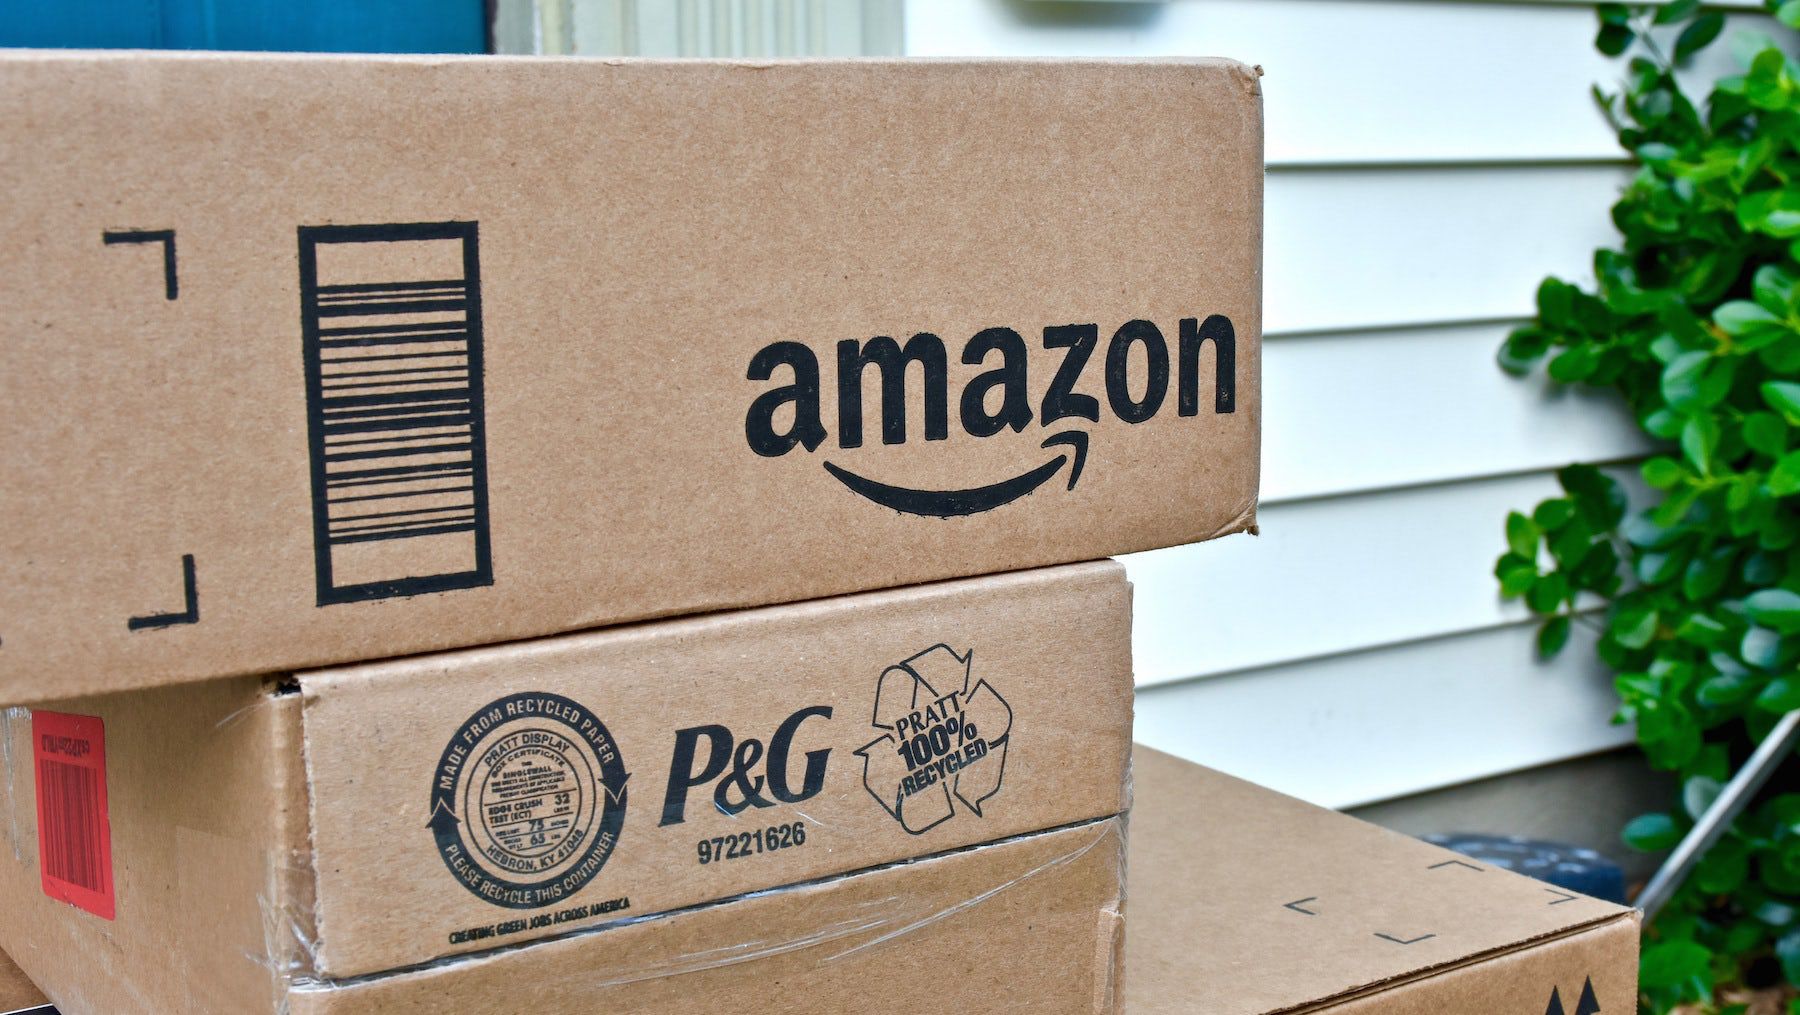 Amazon Reports Quarterly Revenue Above Estimates